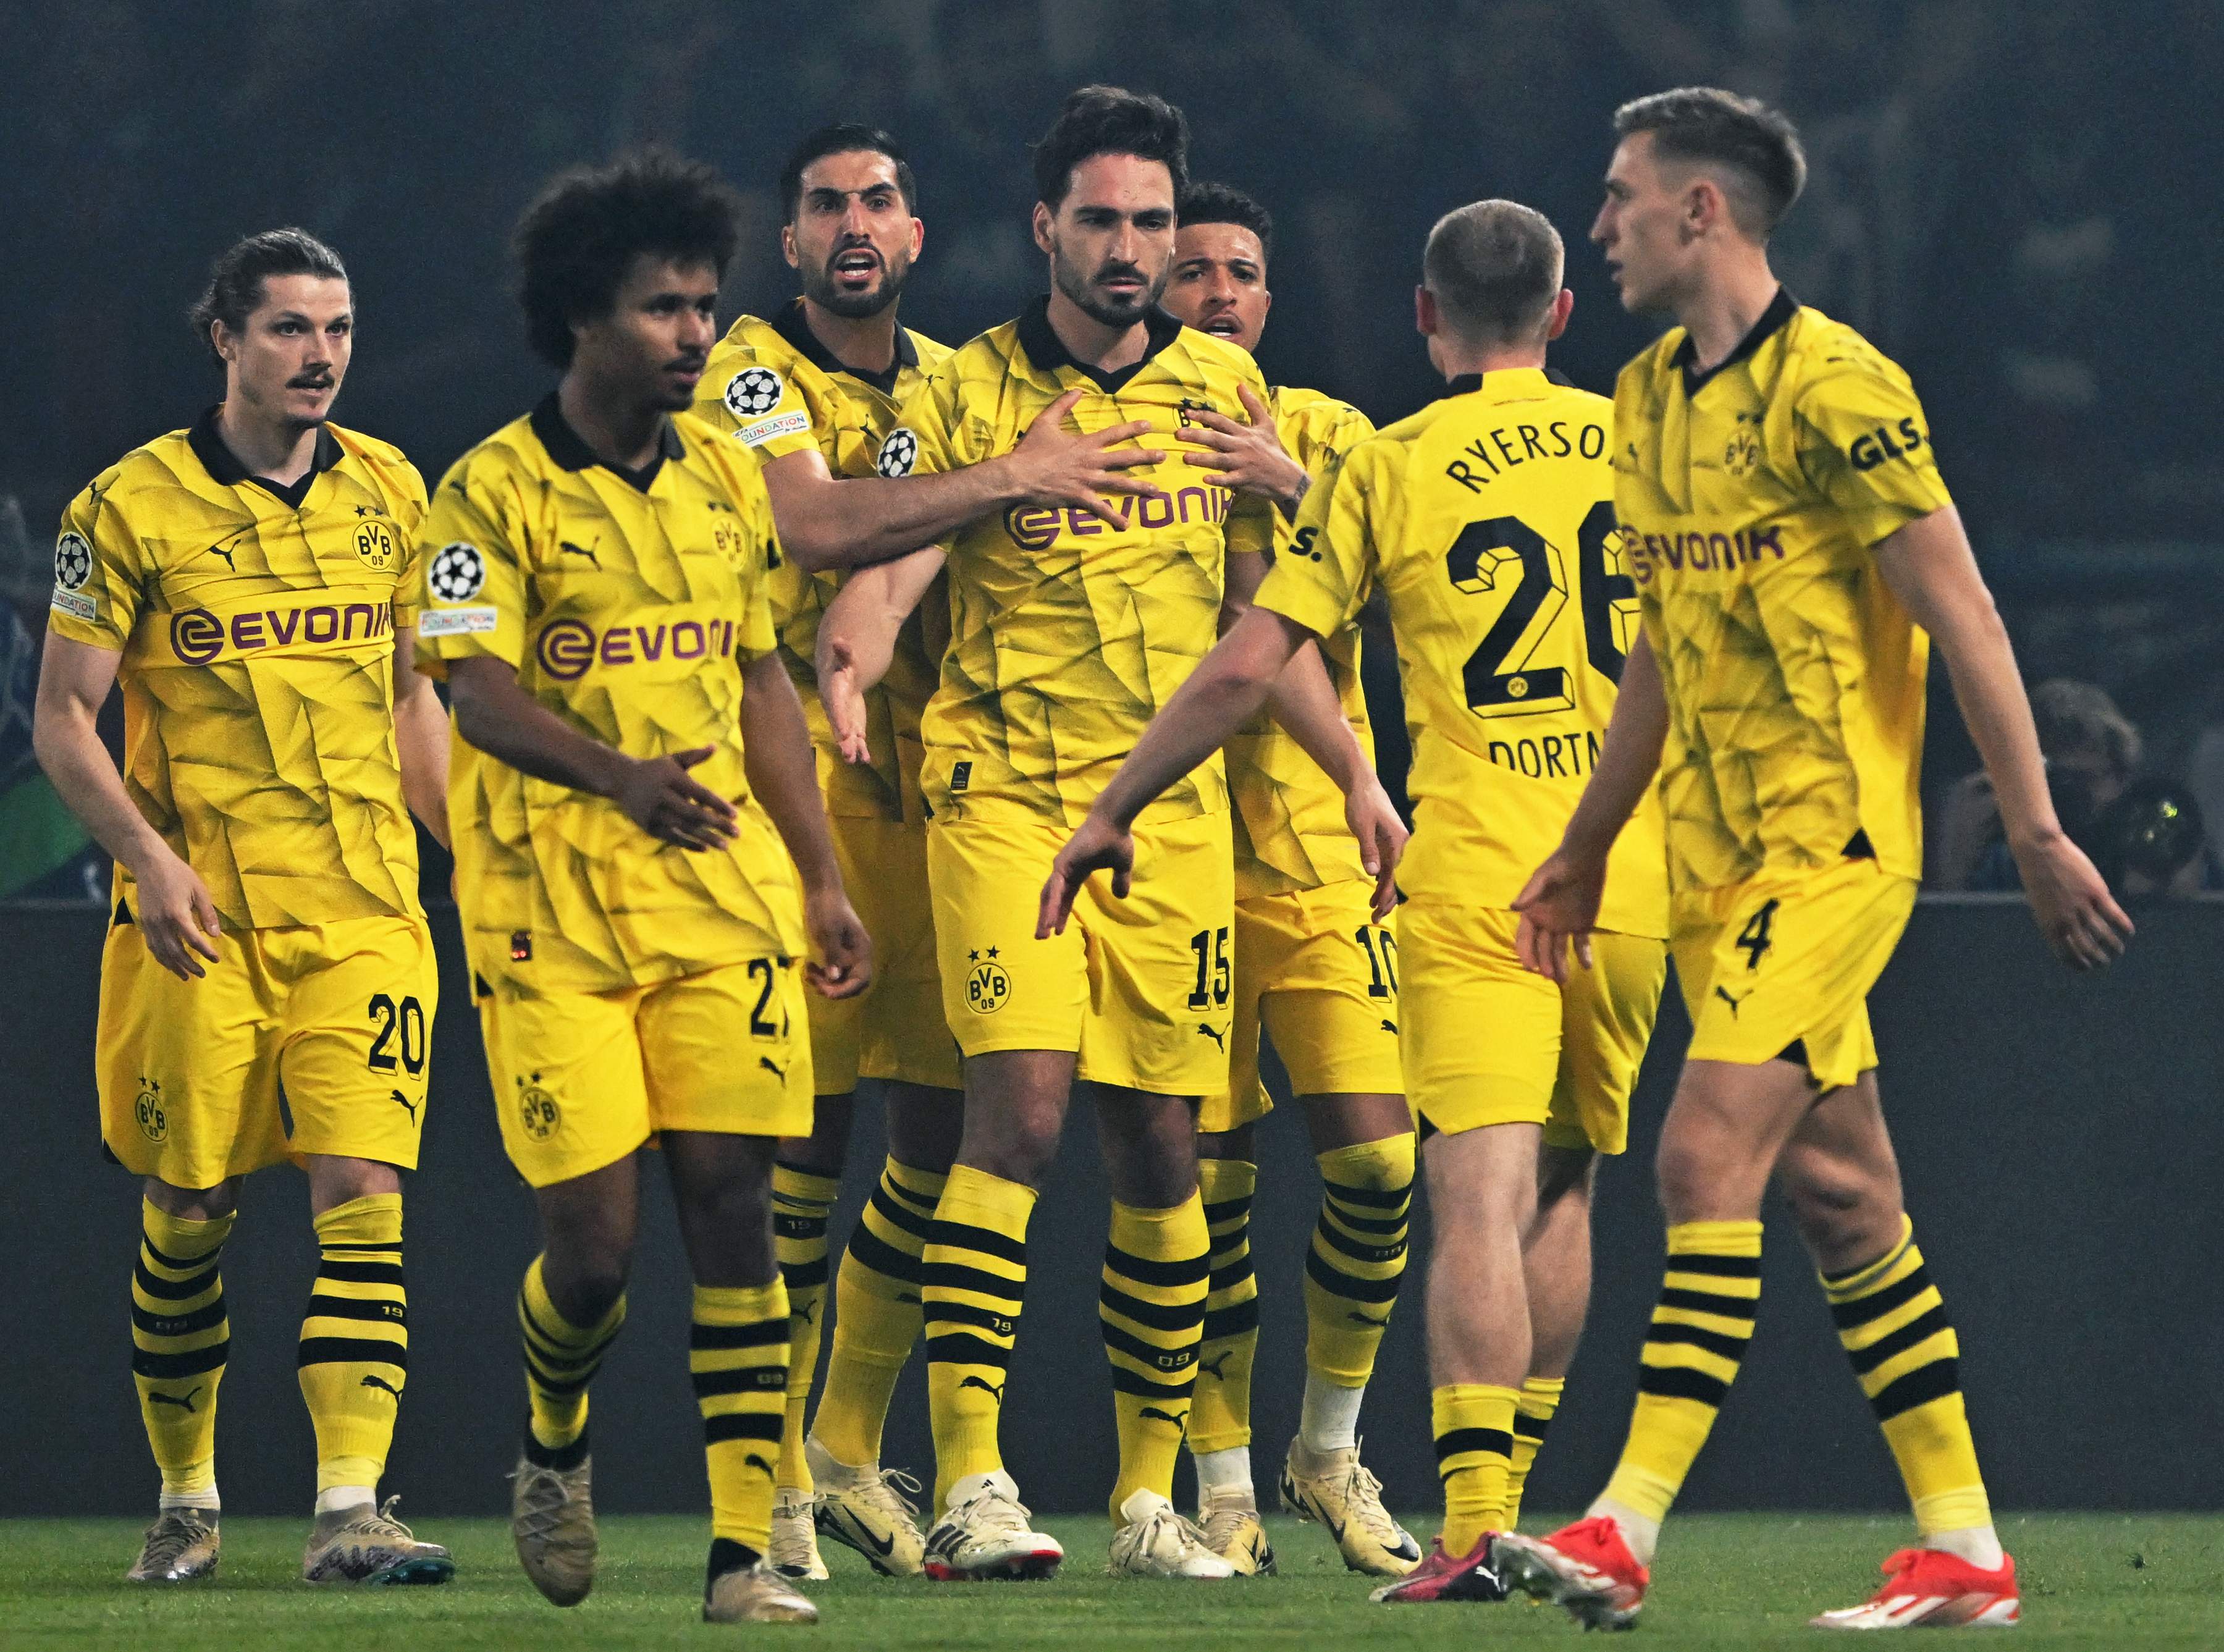 El Borussia Dortmund resiste ante un PSG desesperado (0-1) y se clasifica para la final de la Champions League